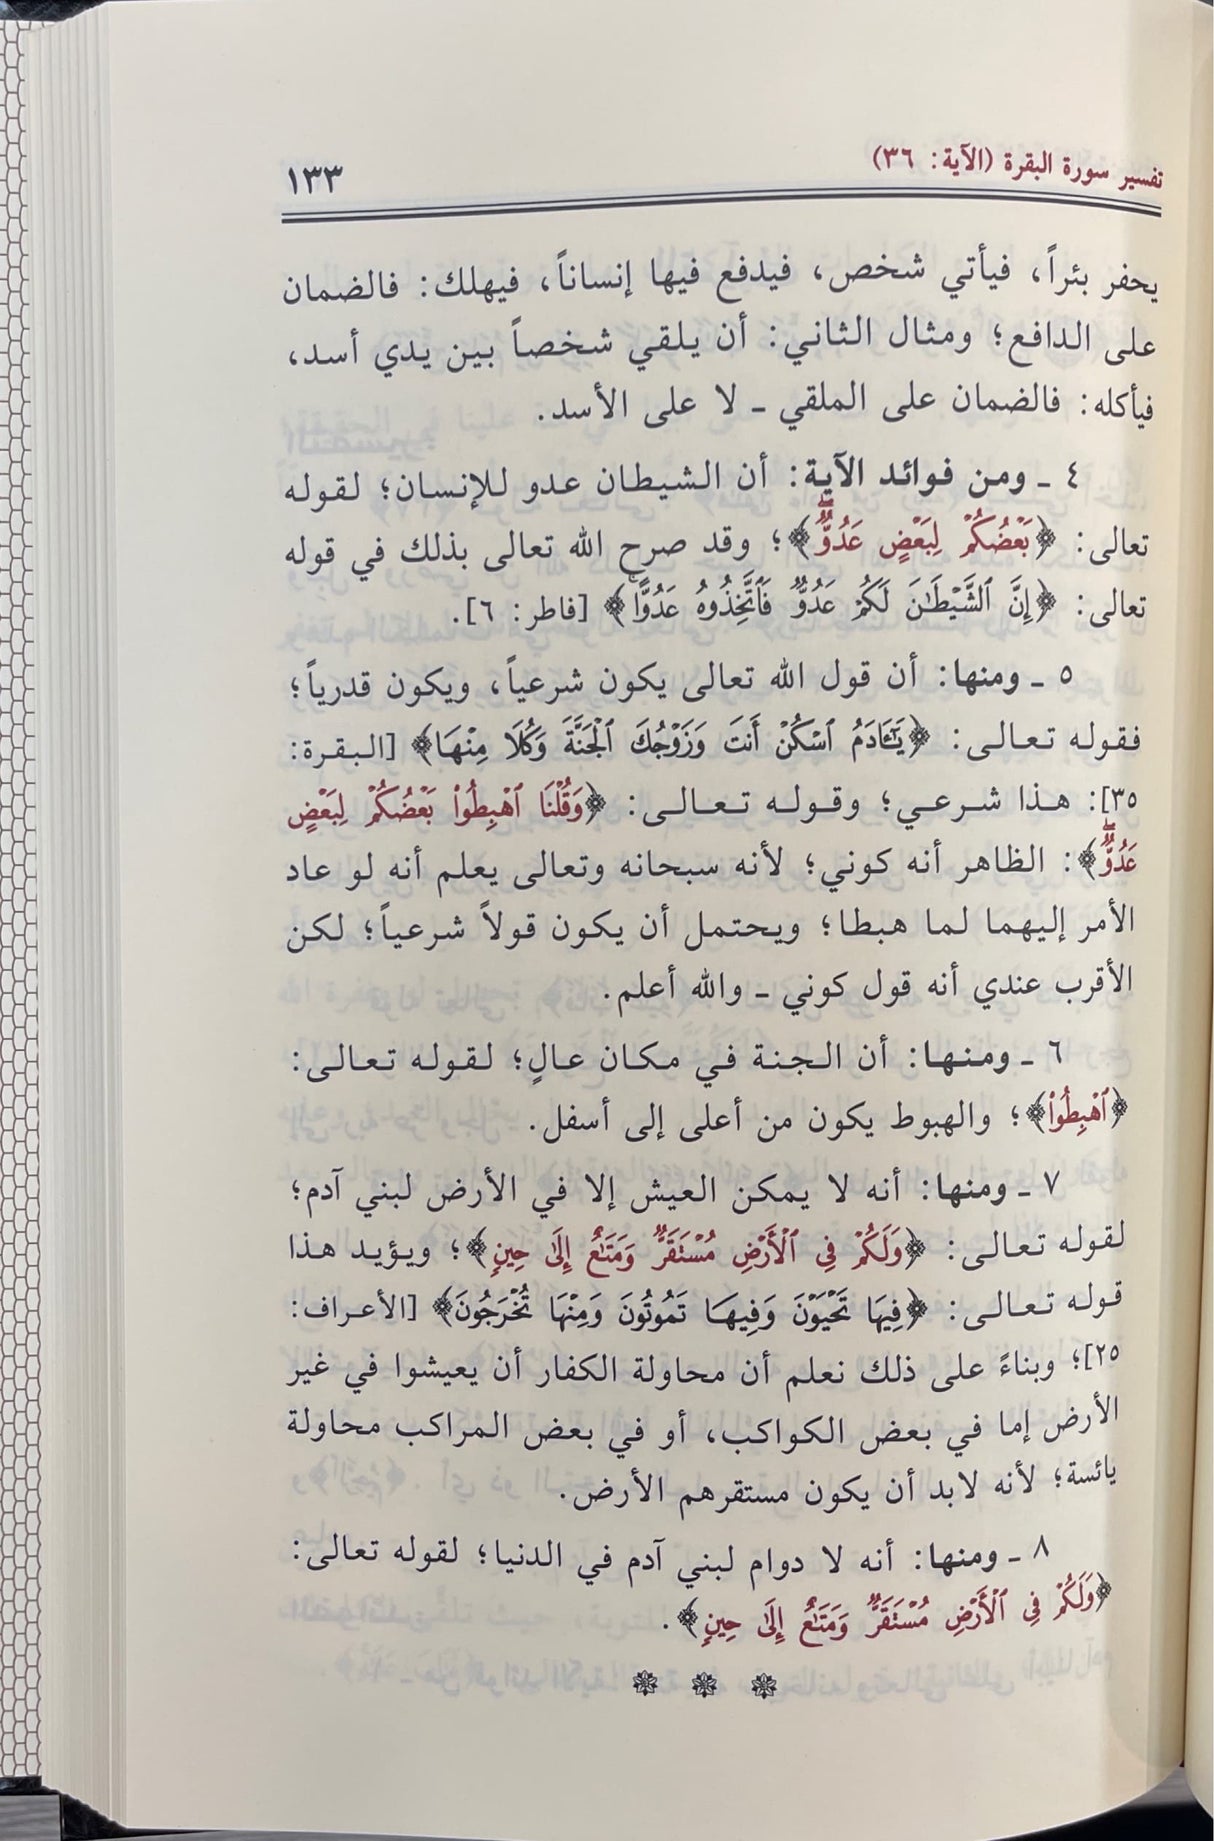 تفسير القران الكريم - الفاتحة والبقرة    Tafsir al Quran al Karim - Surah Fatiha and Baqara (3 Volume Set)